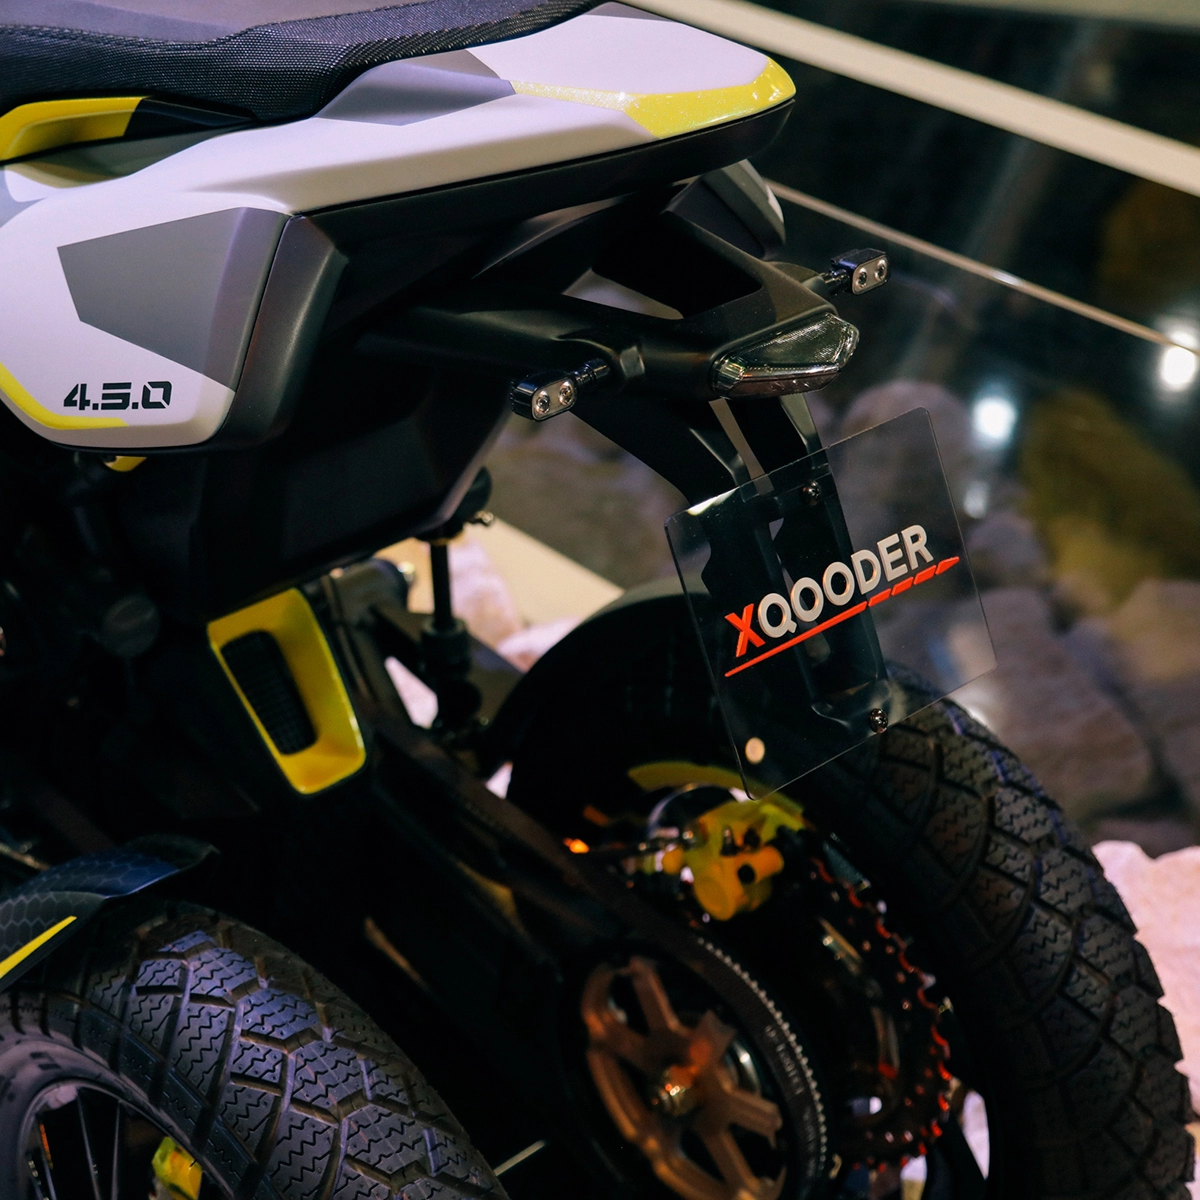 Xqooder touring - mẫu tay ga 4 bánh của thương hiệu thụy sĩ chuẩn bị ra mắt trong năm 2020